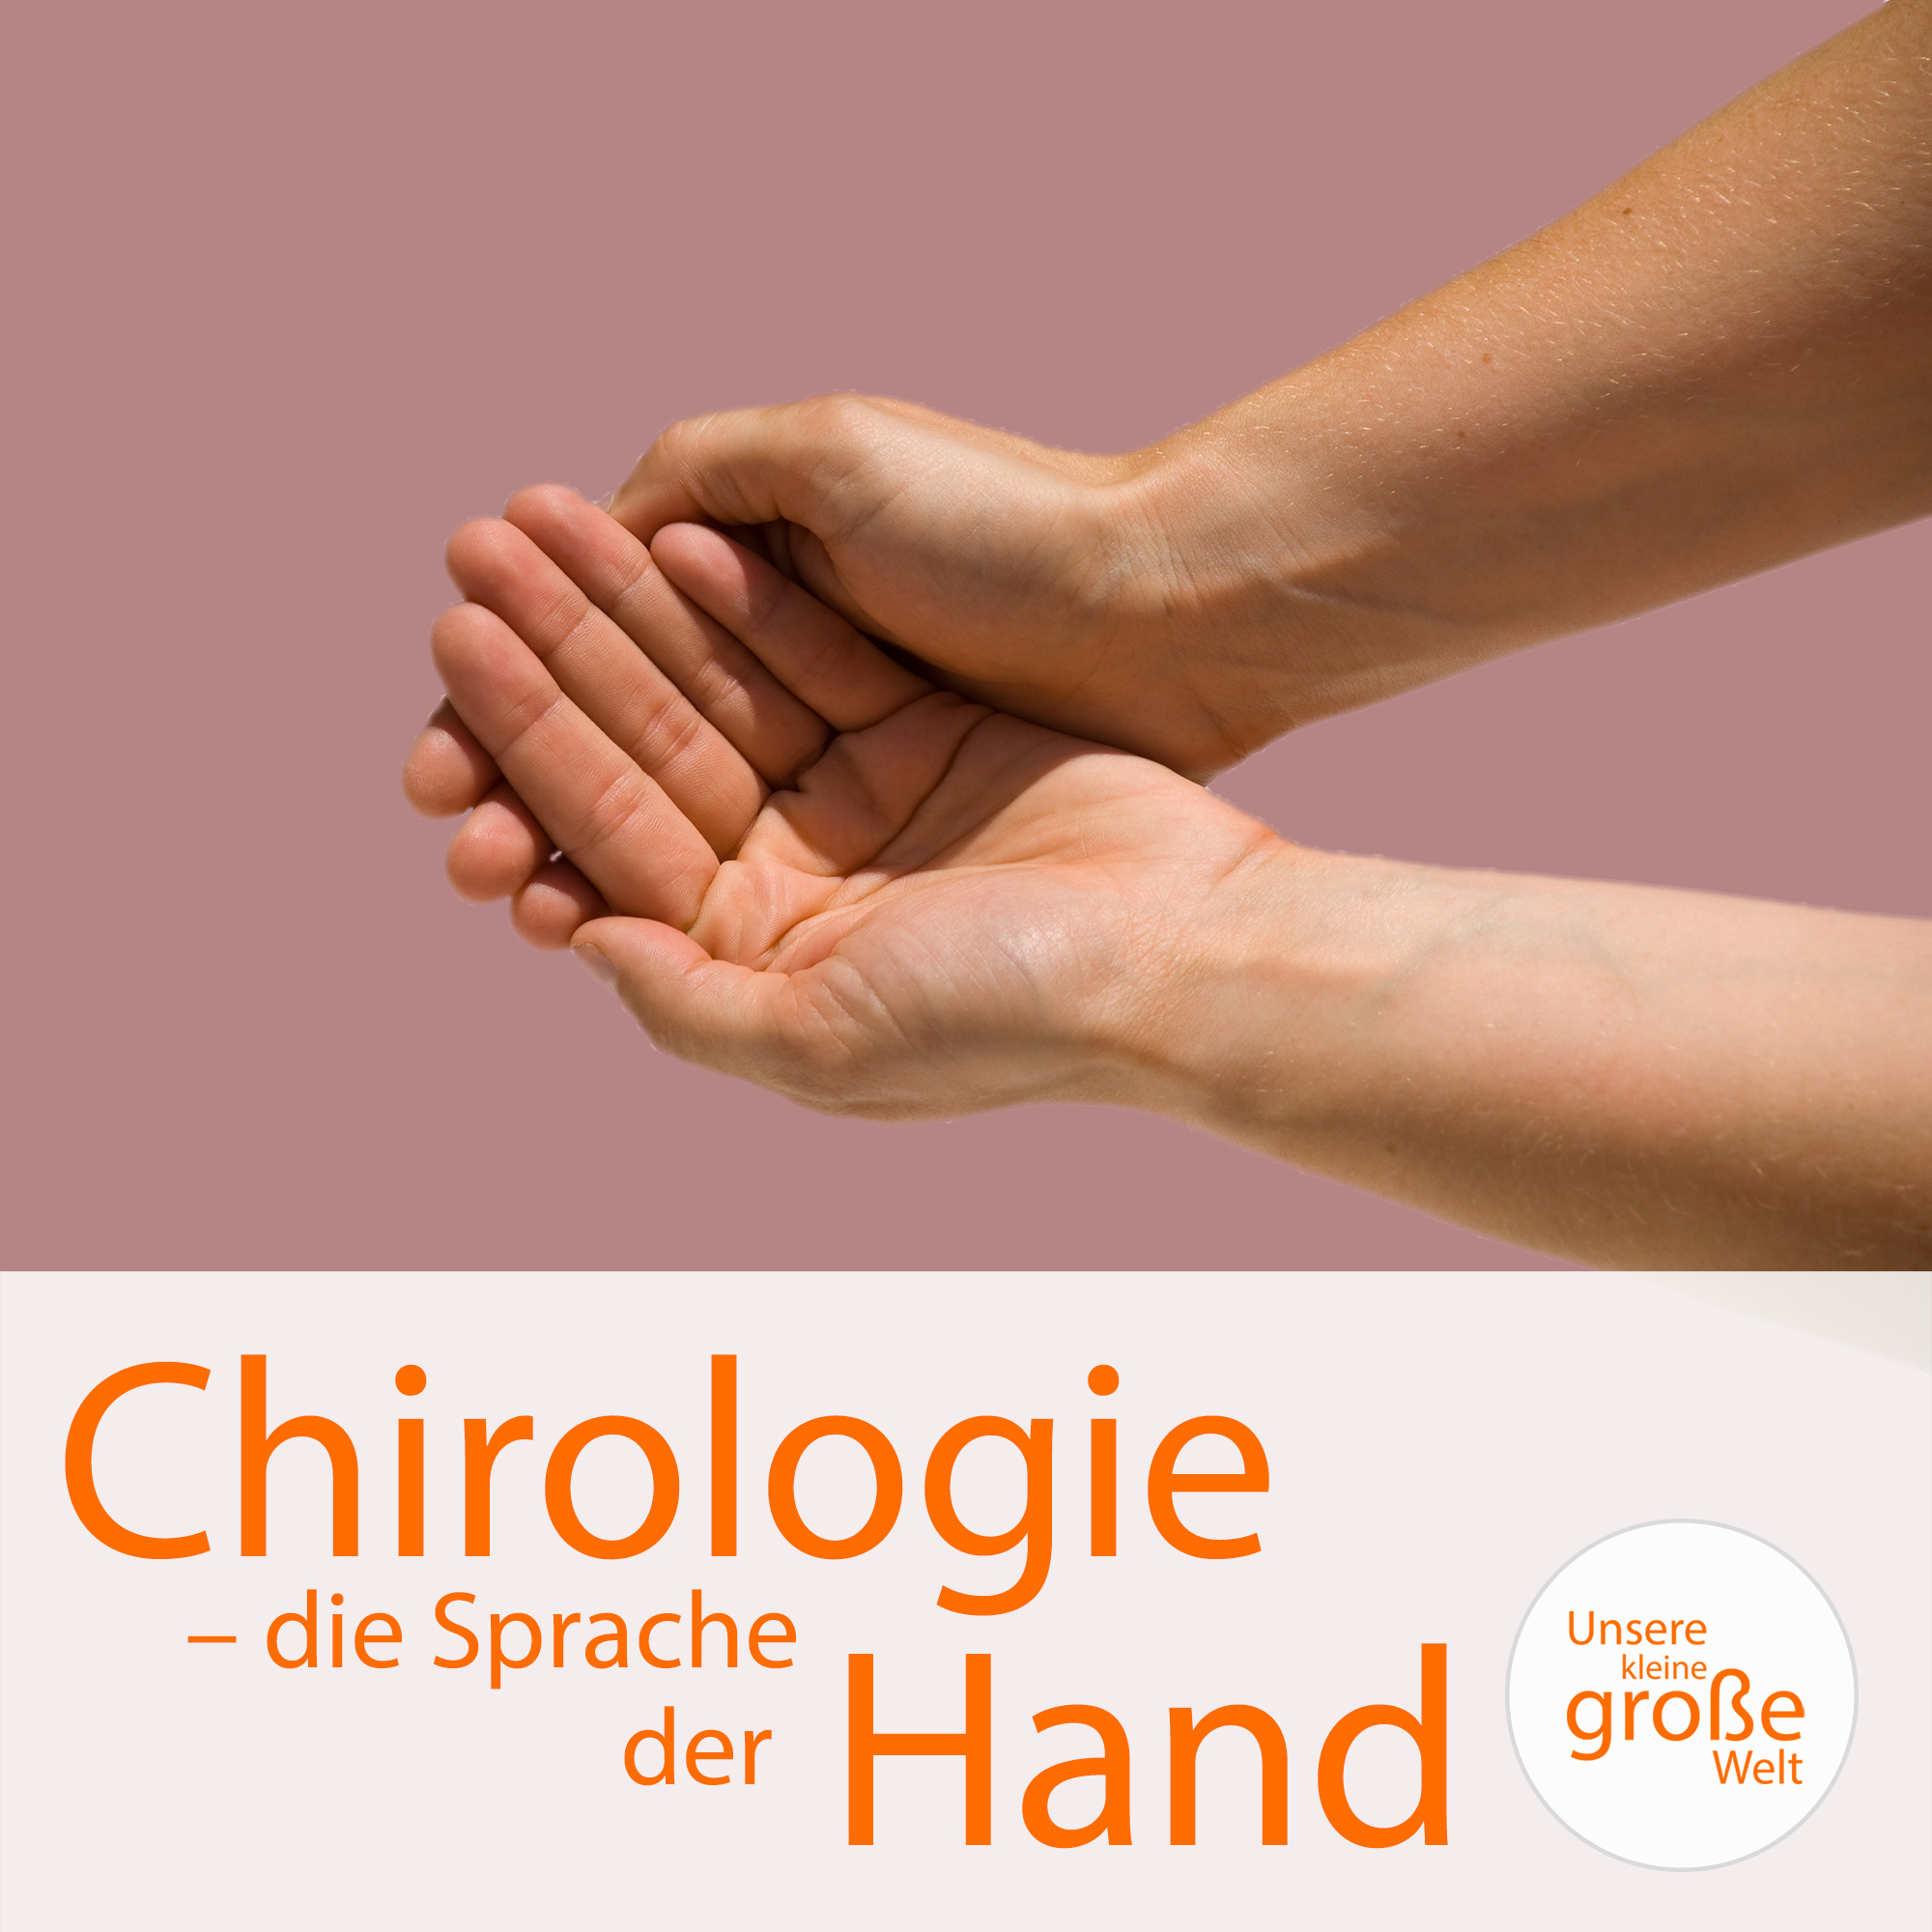 Unsere kleine, große Welt Folge 163: Chirologie – die Sprache der Hand